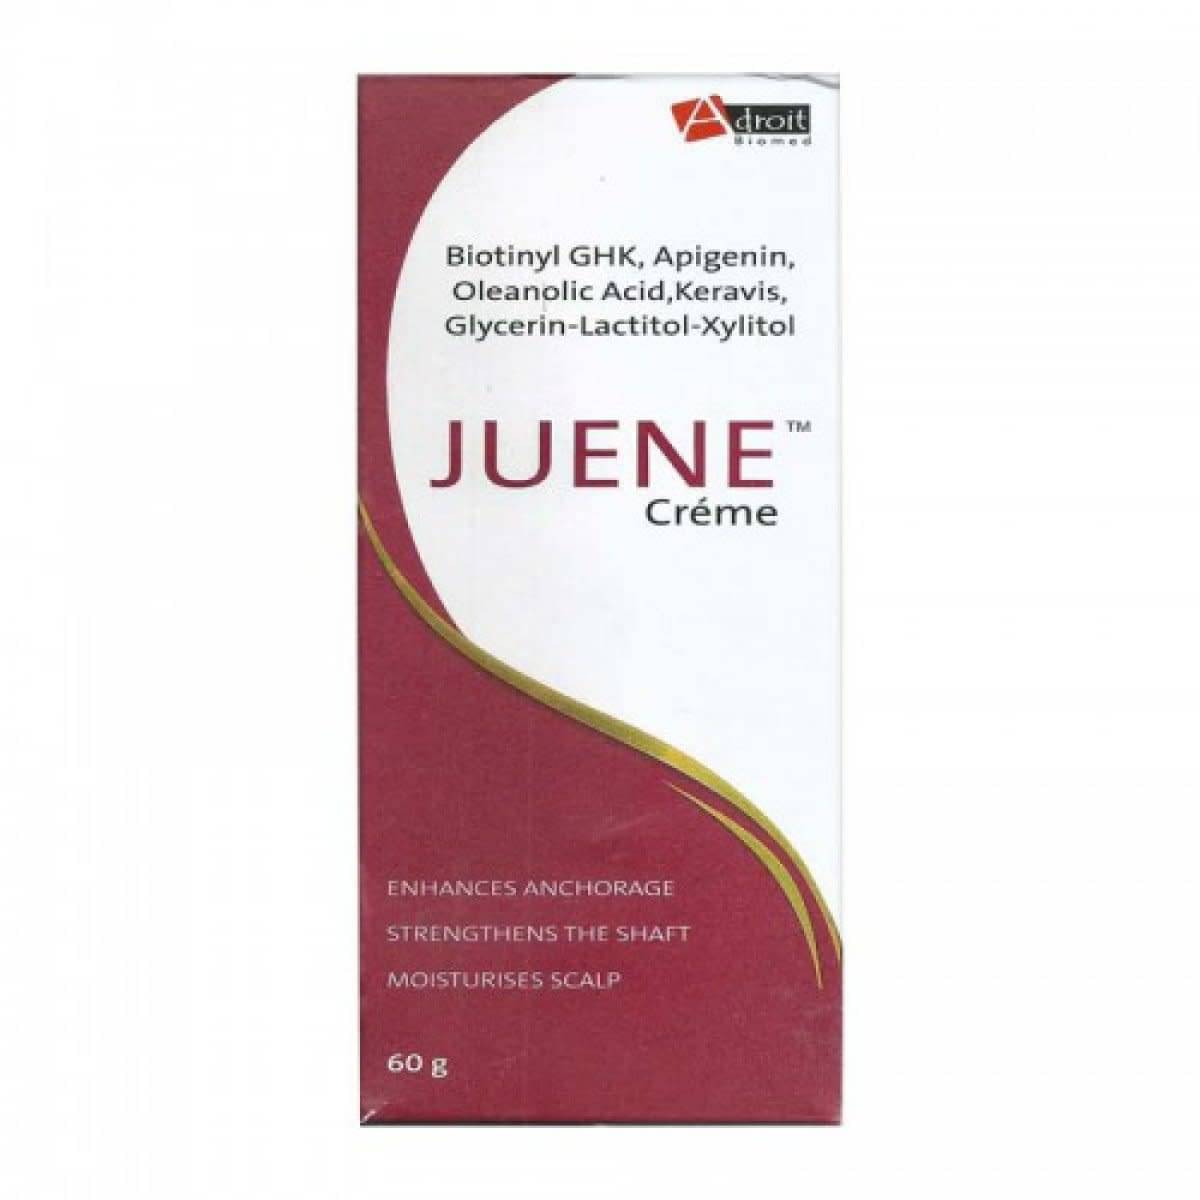 Juene Cream: Find Juene Cream Information Online | Lybrate